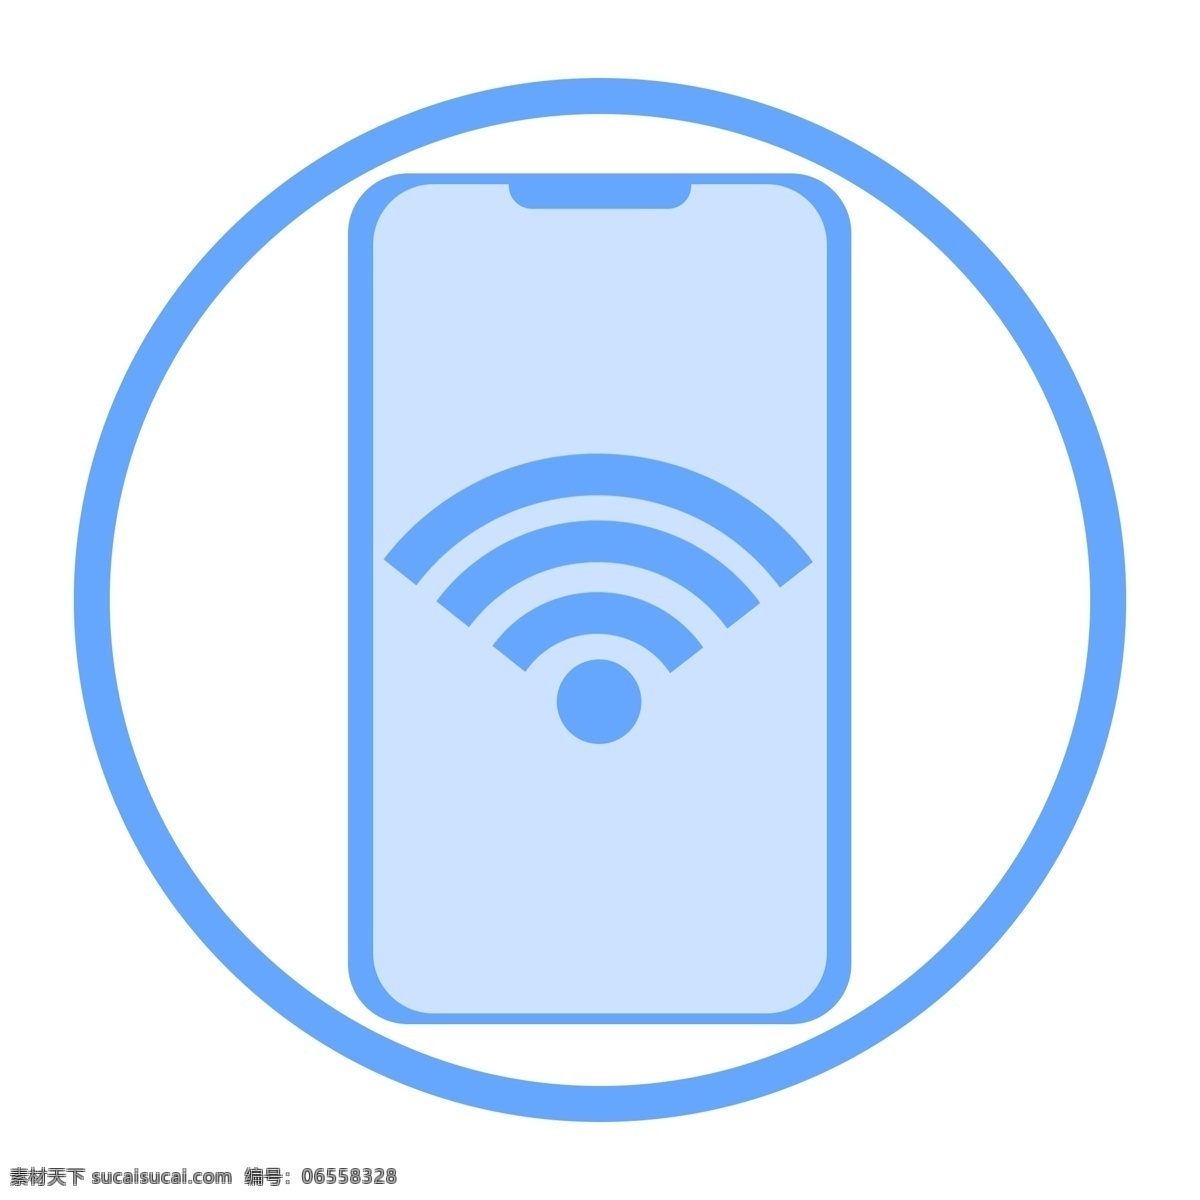 科技 感 蓝色 扁平化 ui 图标 手机 信号 wifi 手机图标 手机扁平 手机科技 手机ui 手机信号 科技图标 科技扁平 科技蓝色 科技手机 信号图标 wifi图标